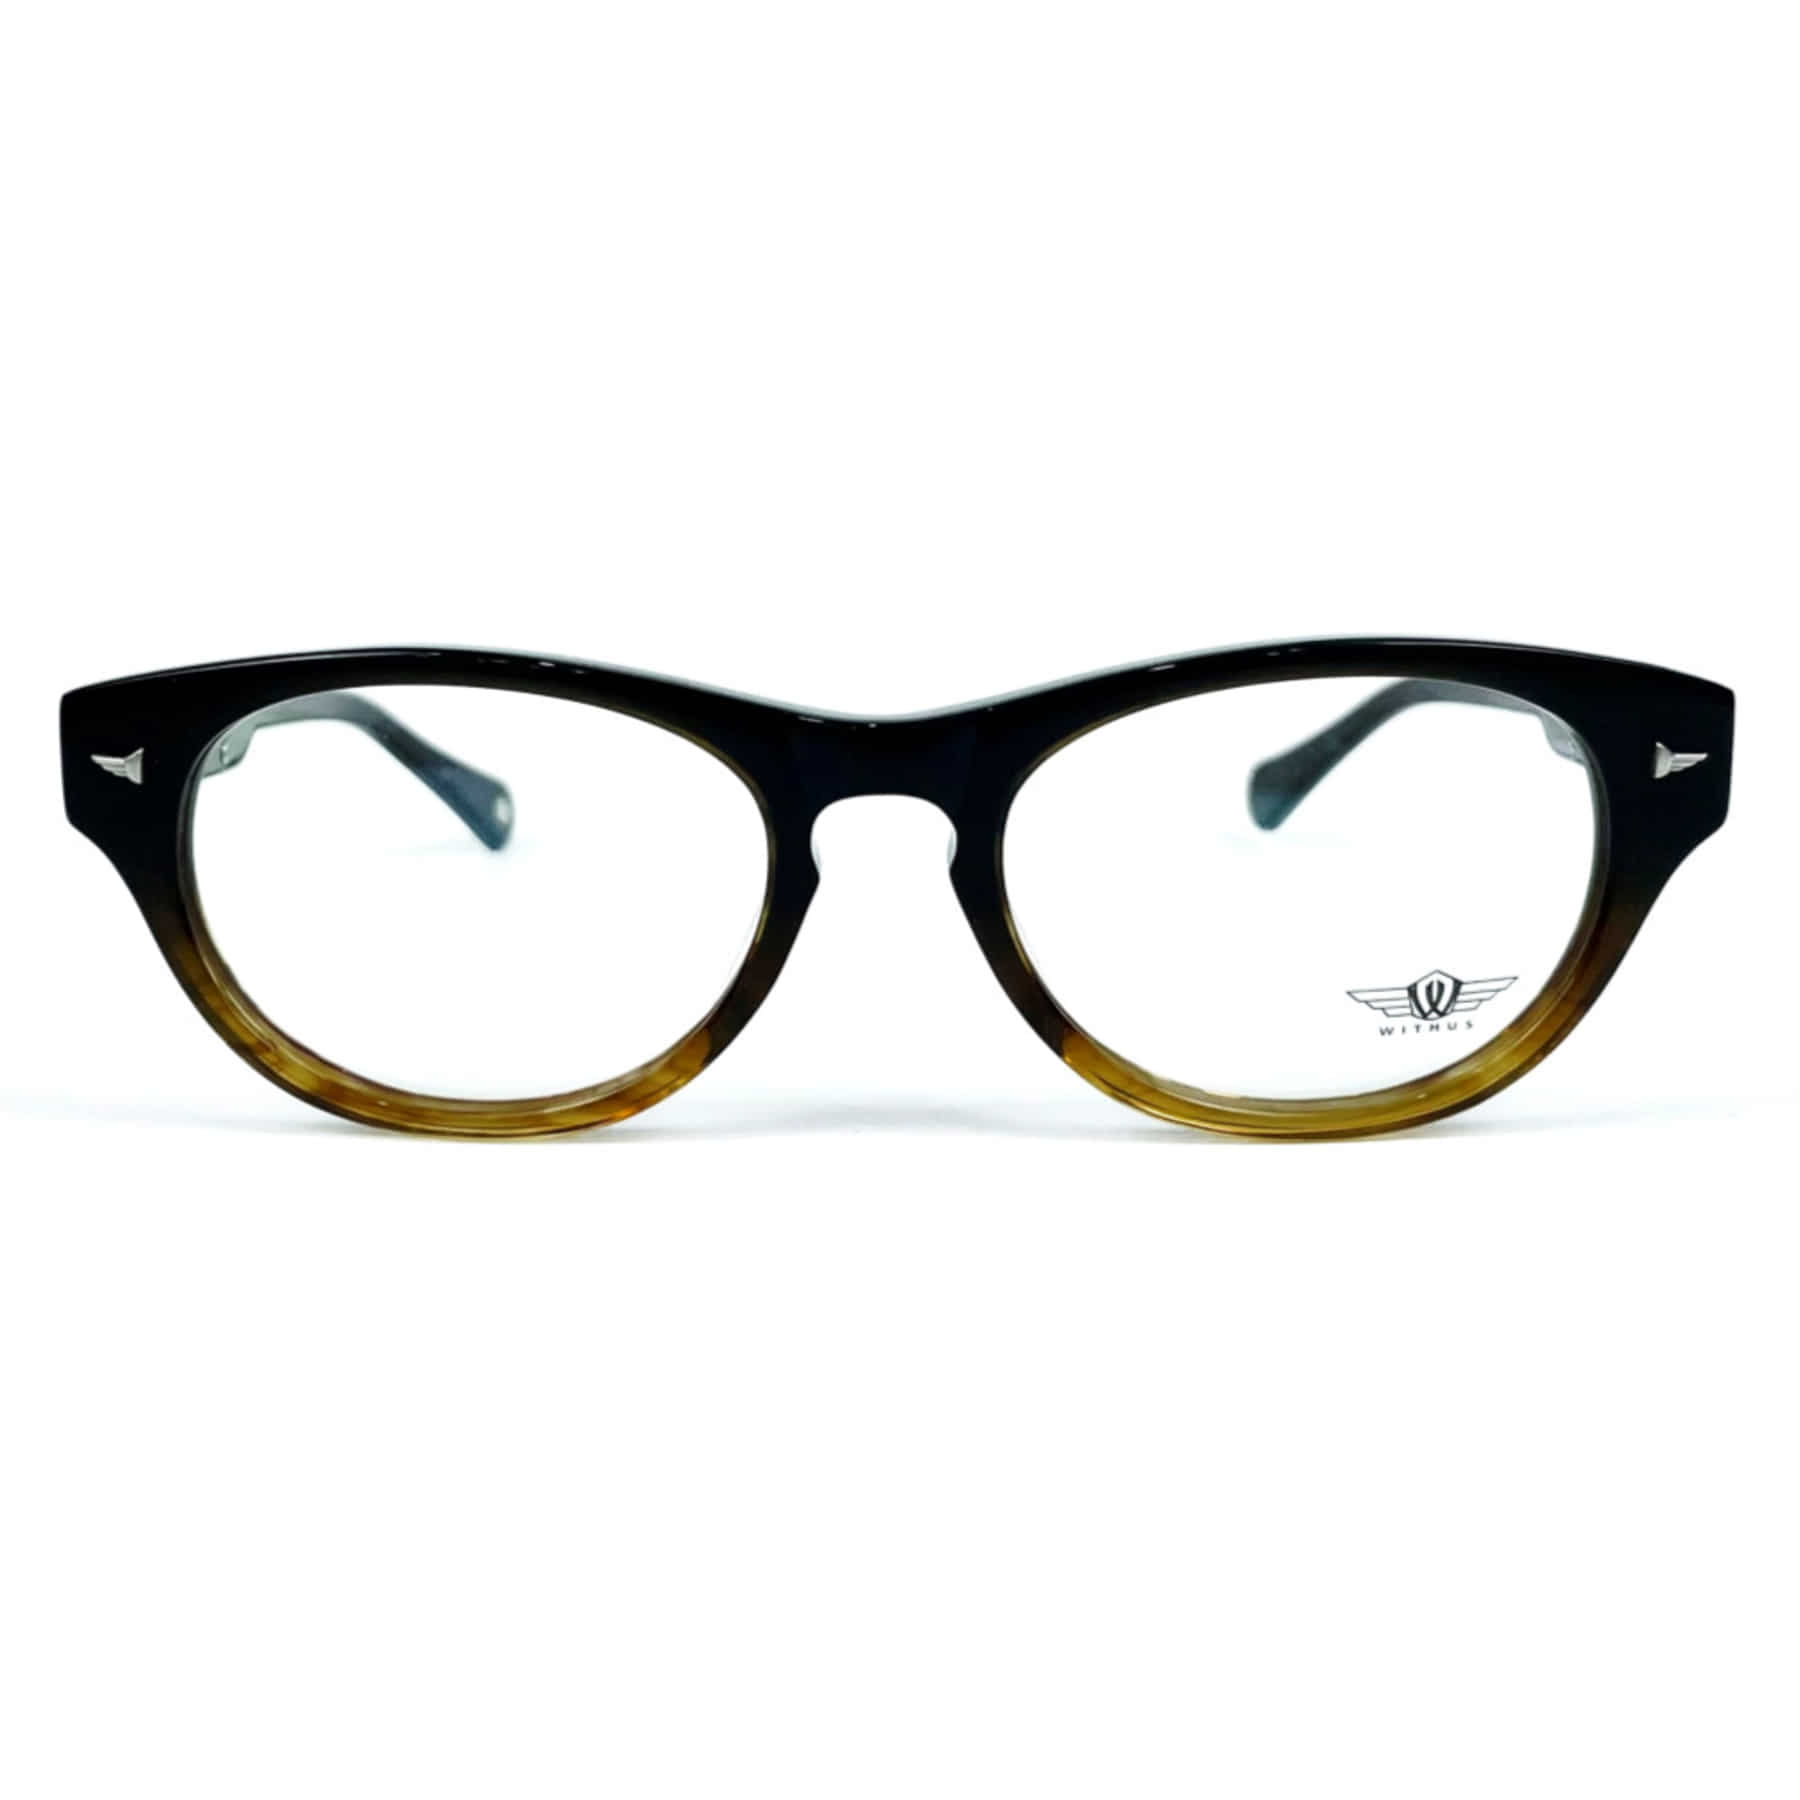 WITHUS-8129, Korean glasses, sunglasses, eyeglasses, glasses